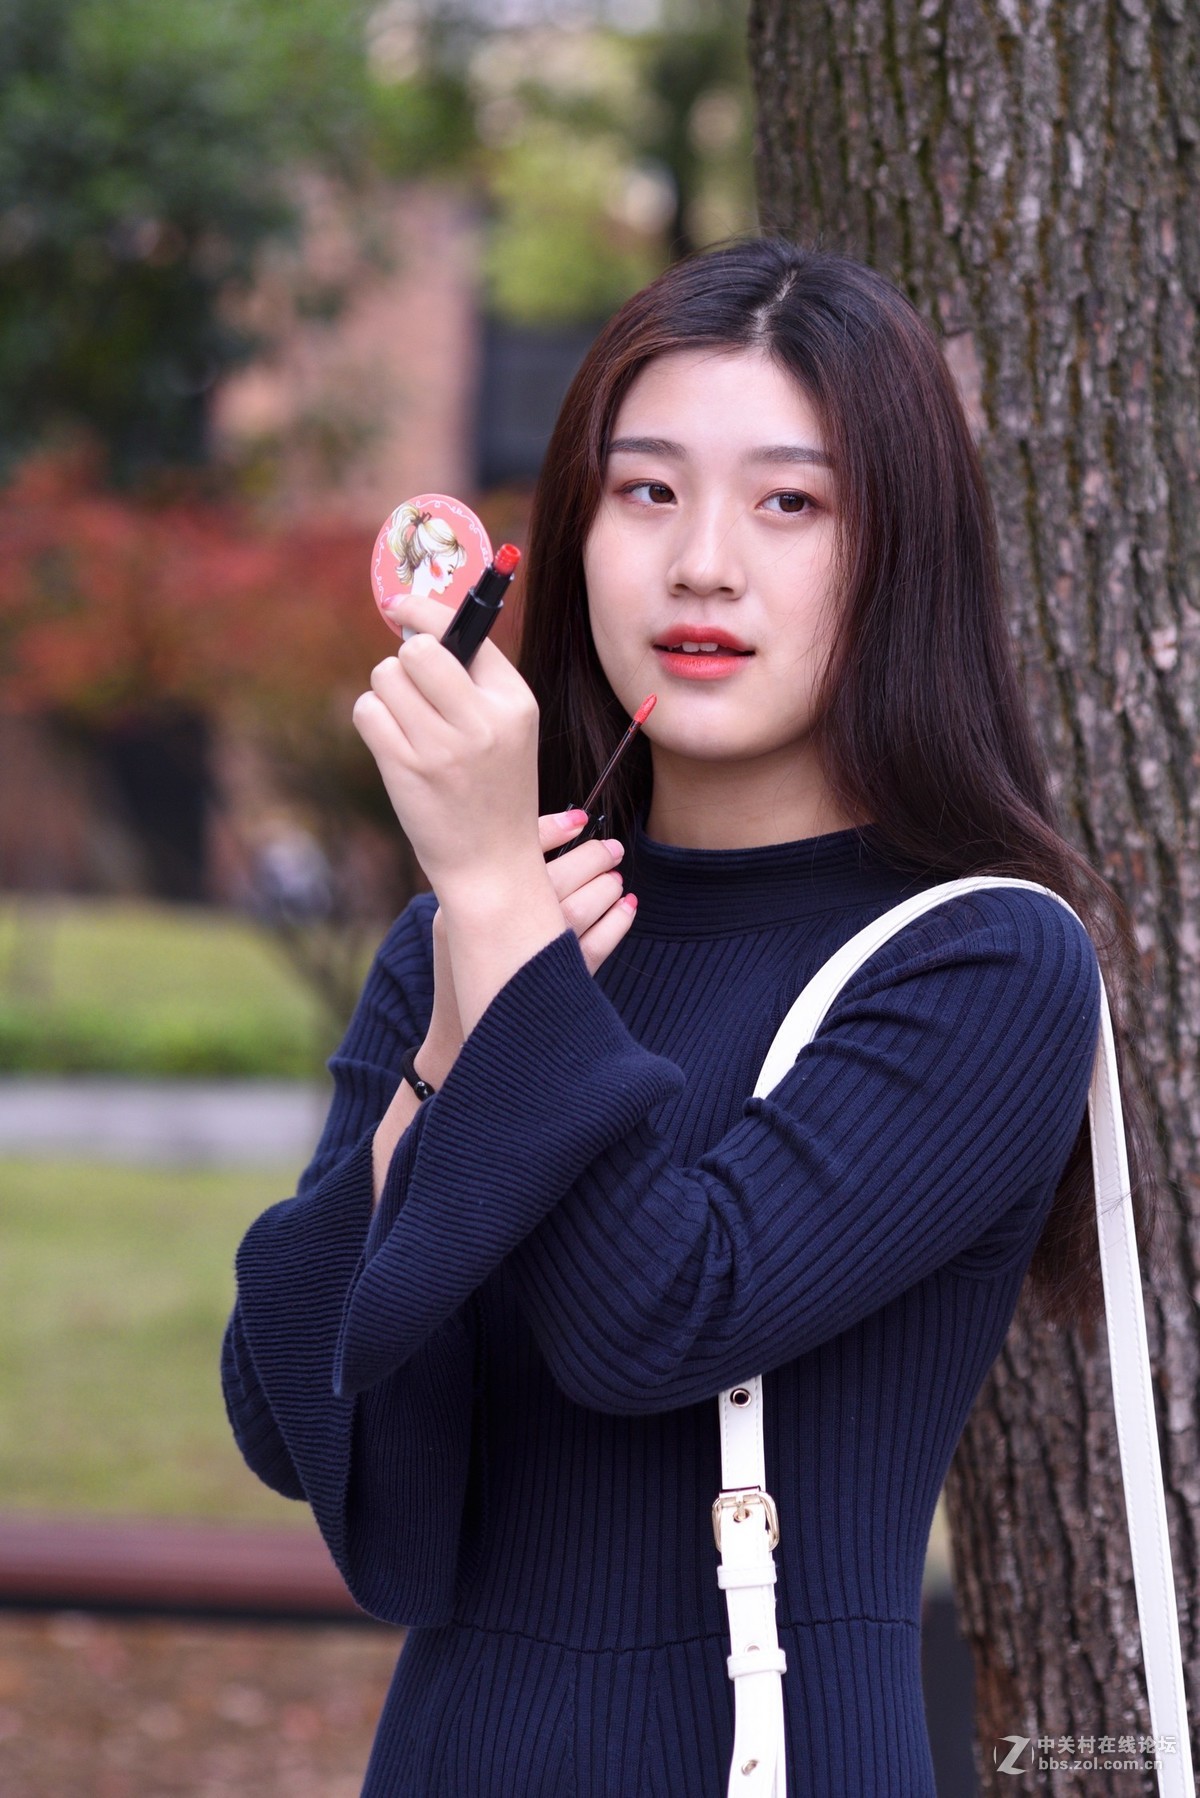 【高清图】日韩系小清新少女人像∶《纯美时光》-中关村在线摄影论坛